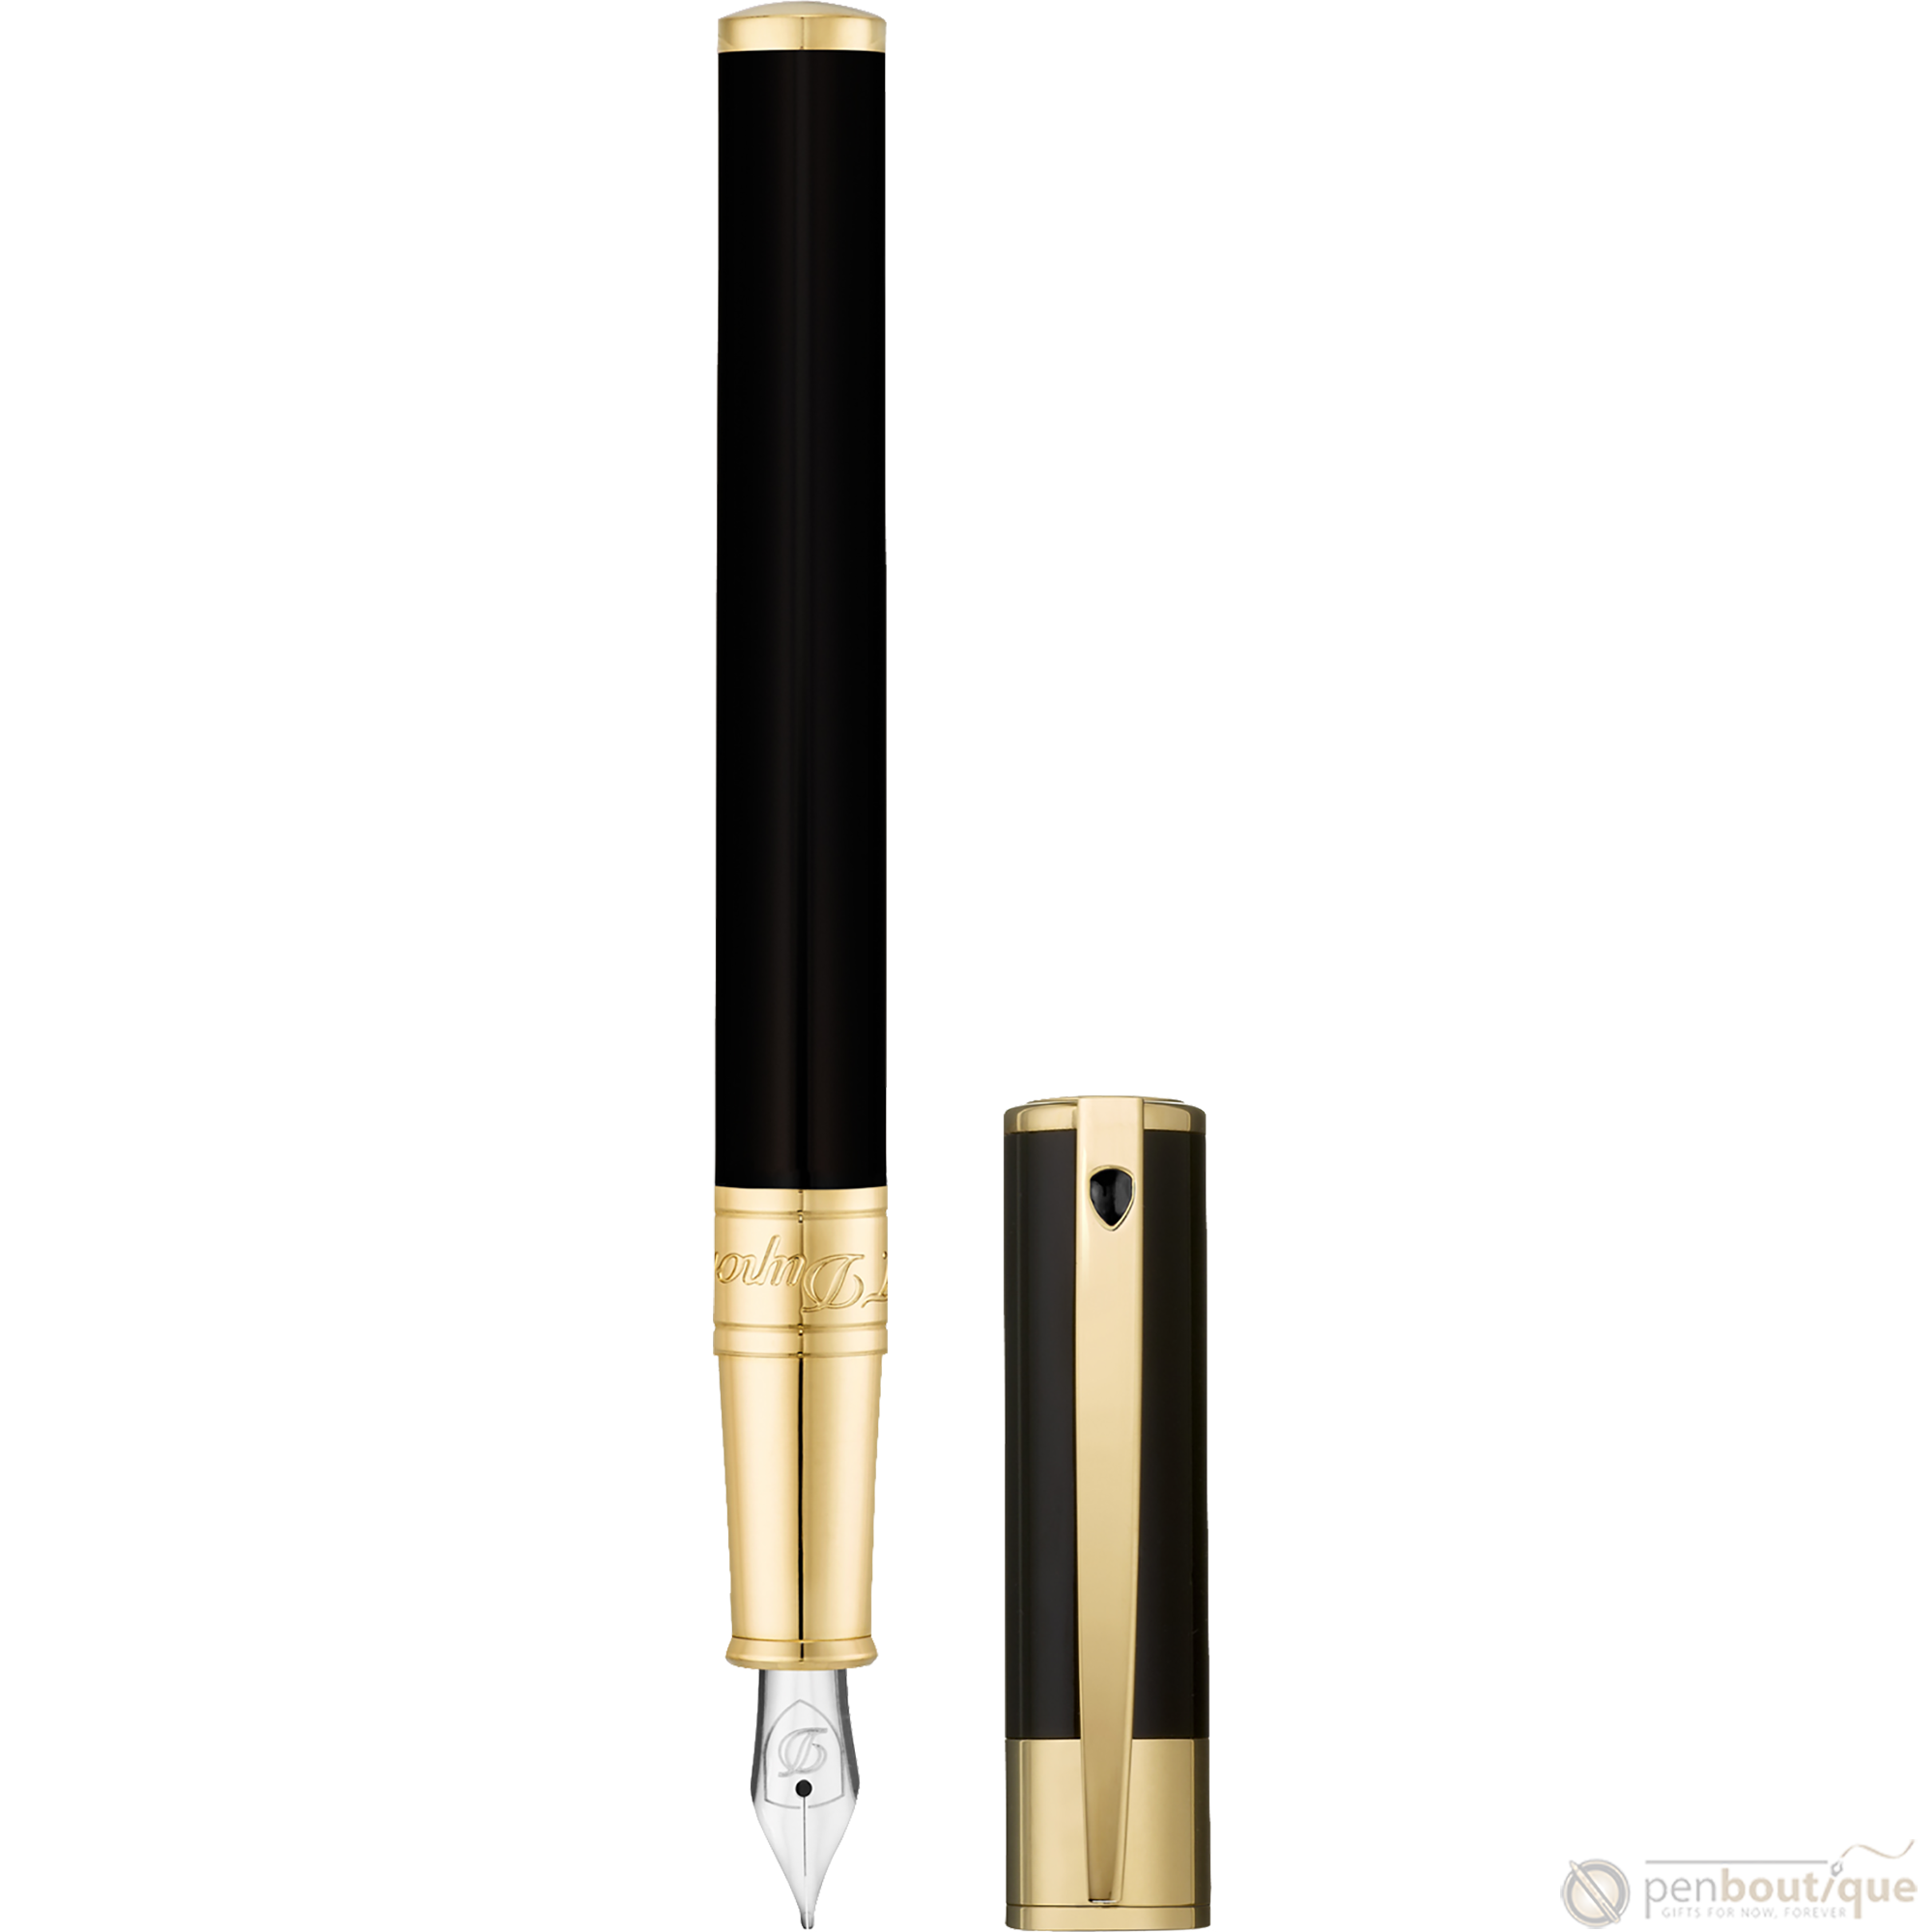 S T Dupont D-Initial Fountain Pen - Gold Trim - Black-Pen Boutique Ltd